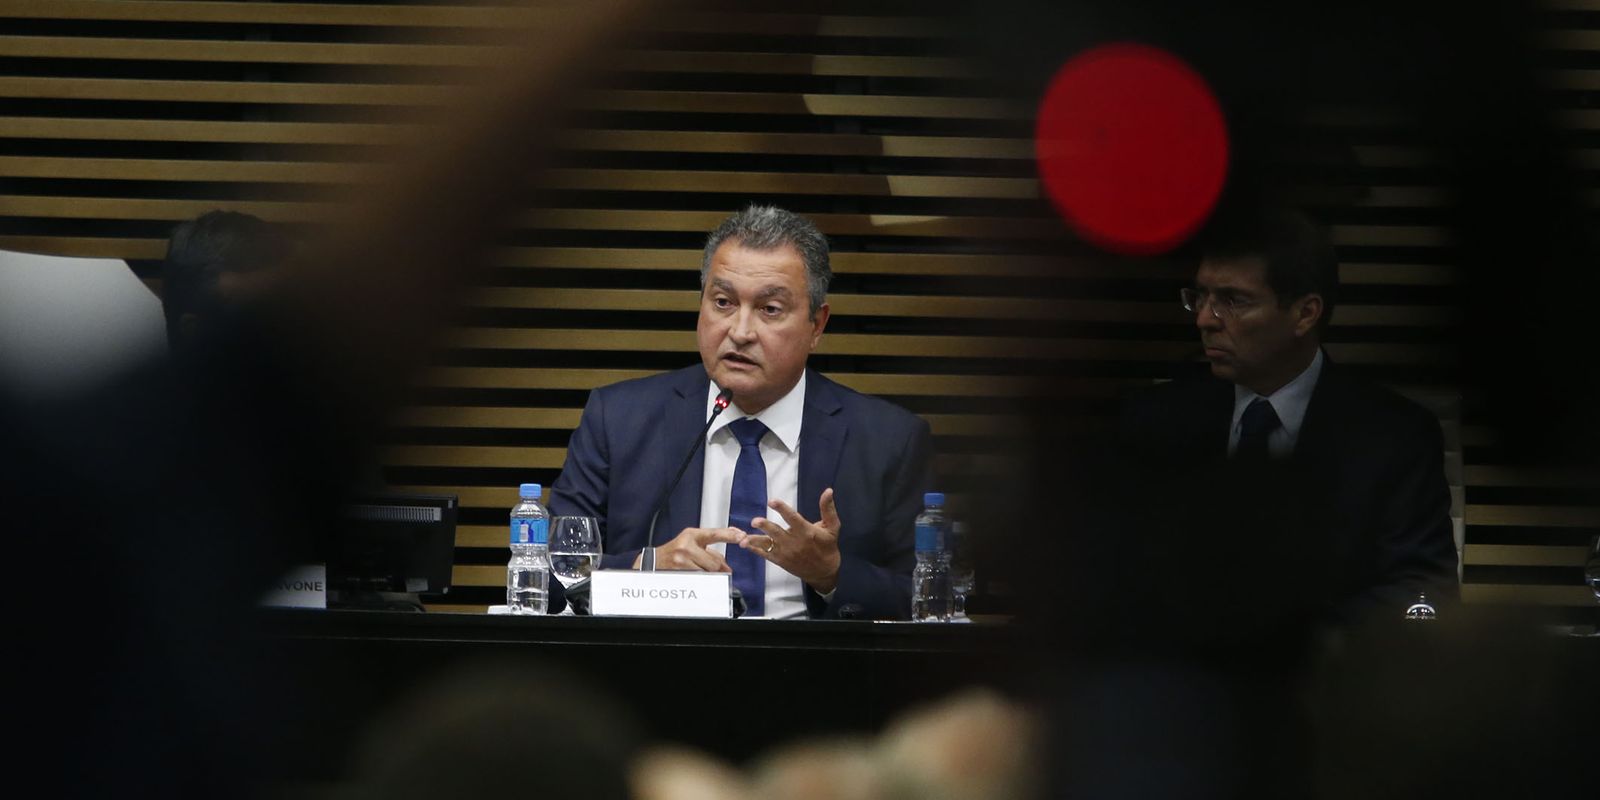 Rui Costa afirma que PAC vai respeitar limites do arcabouço fiscal